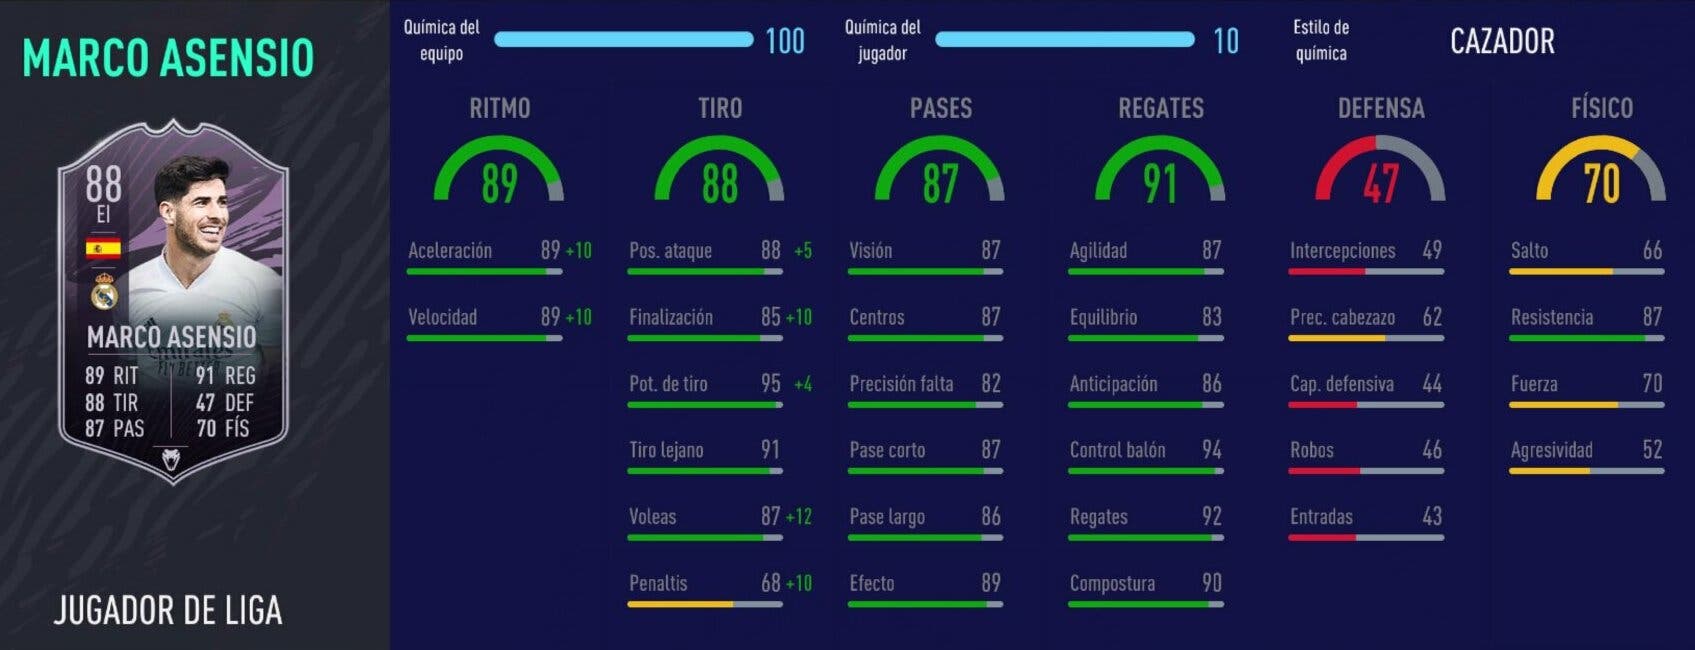 FIFA 21: análisis de Asensio Jugador de Liga free to play. ¿El extremo izquierdo de la Liga Santander?